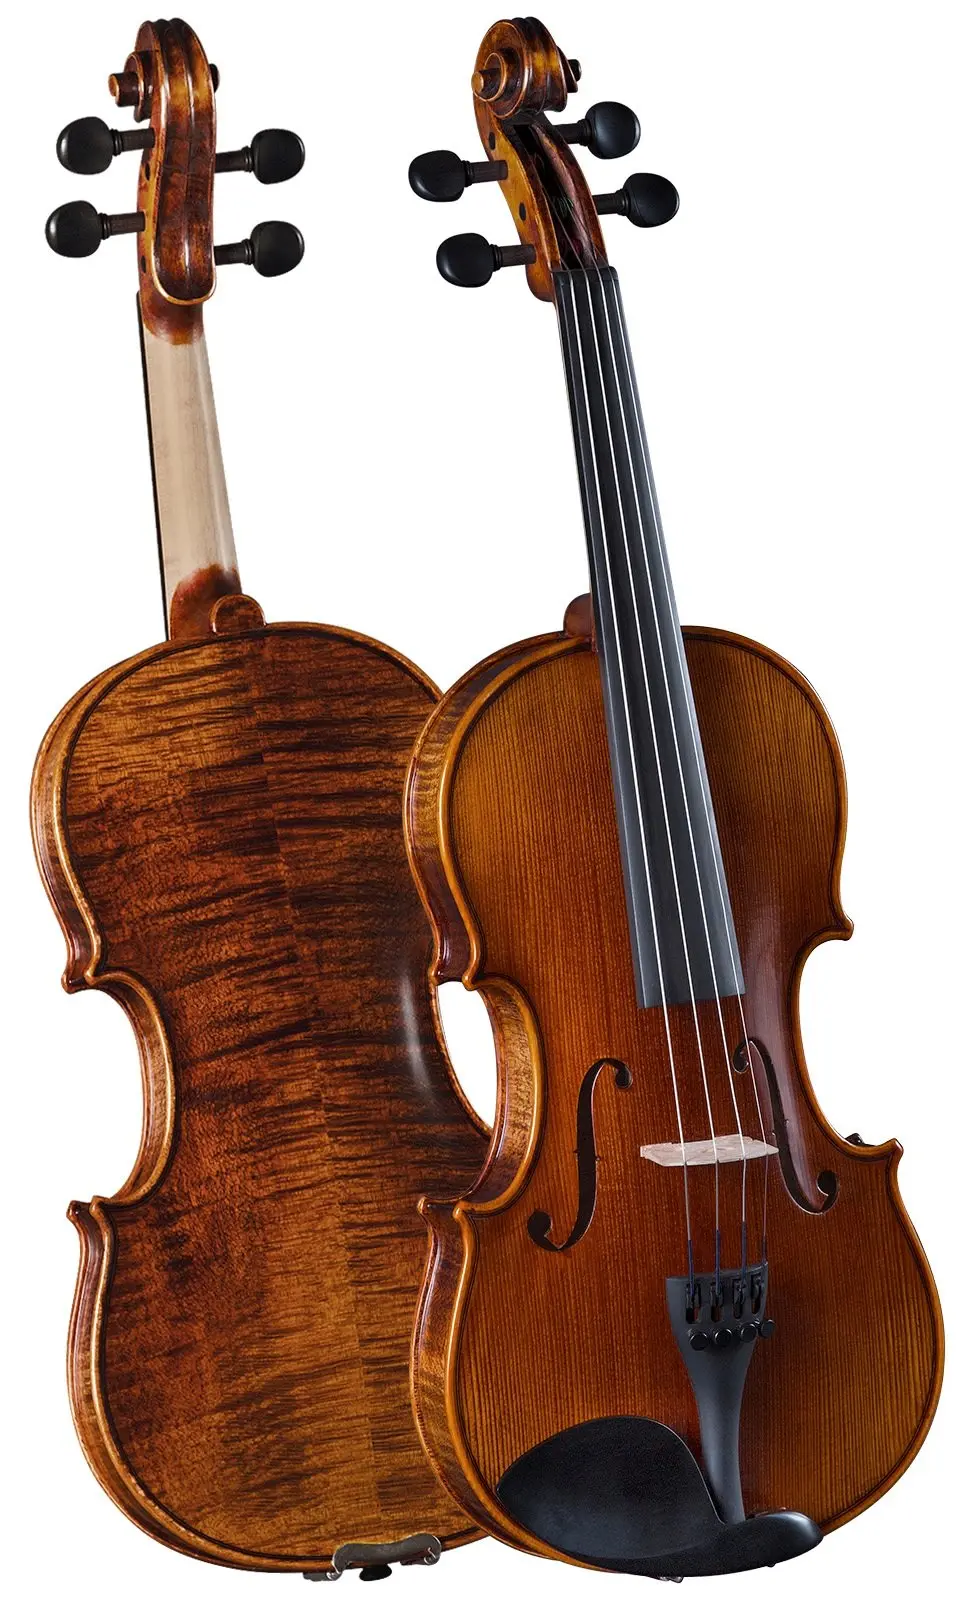 cremona violin official site - Who makes Cremona violins